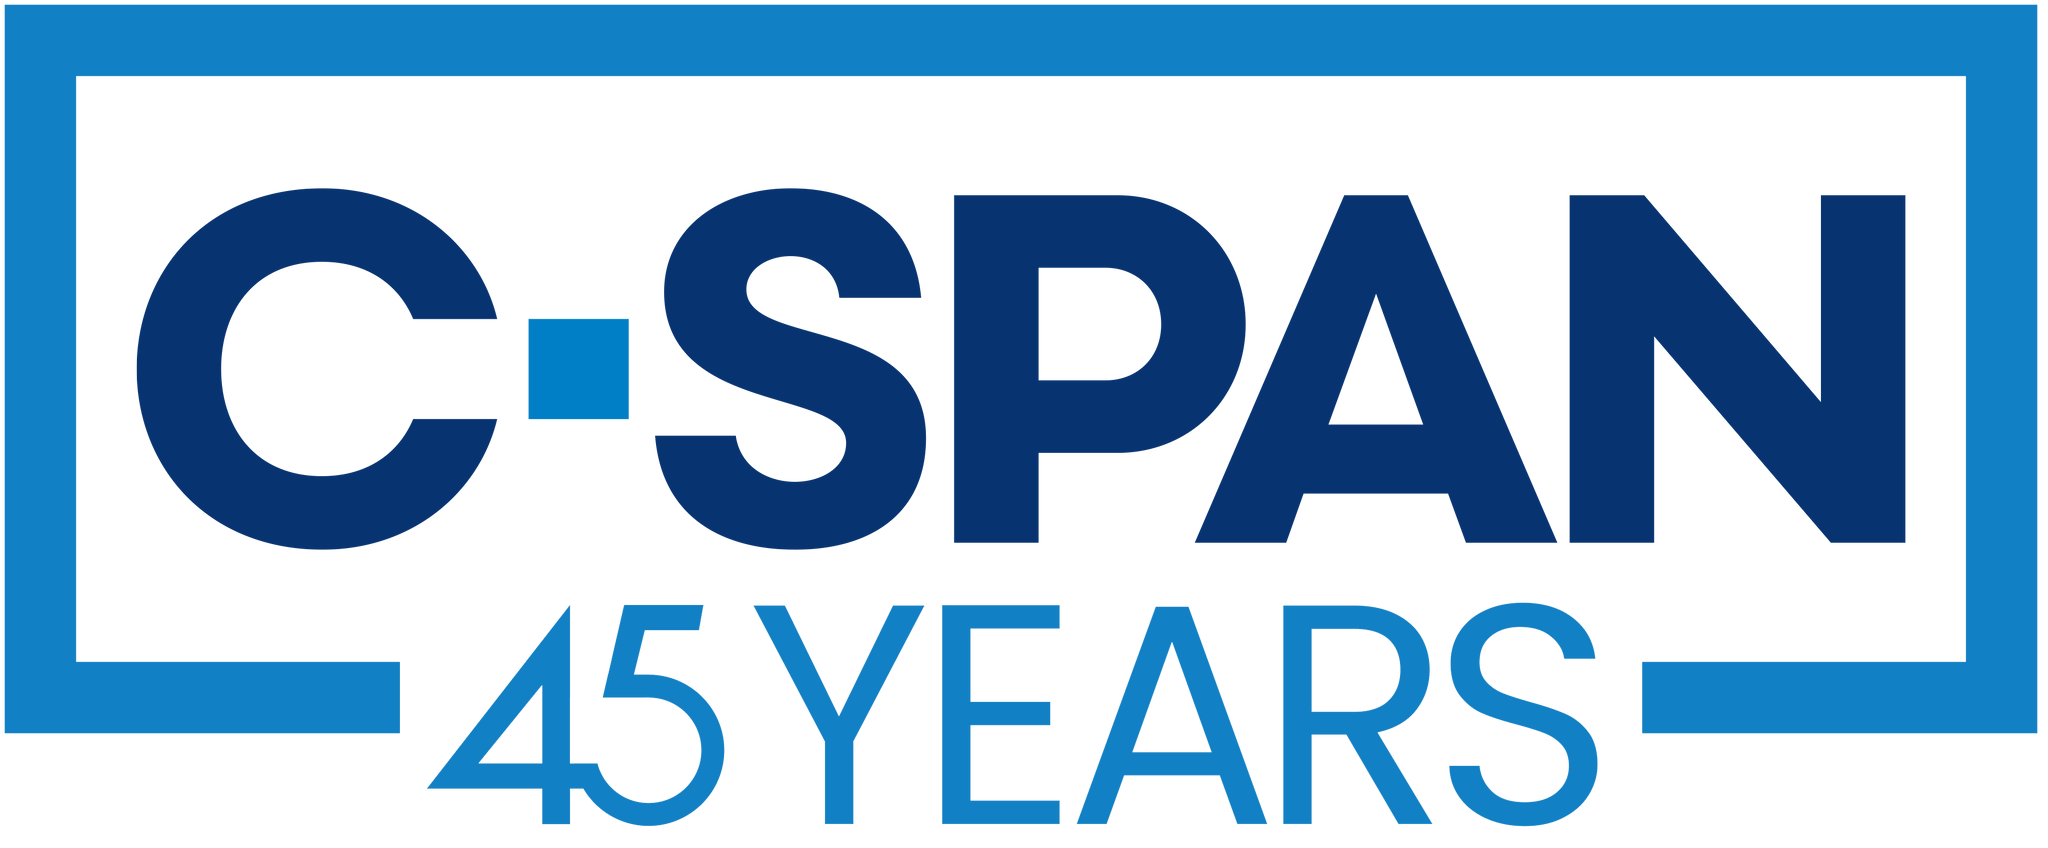 C-SPAN logo